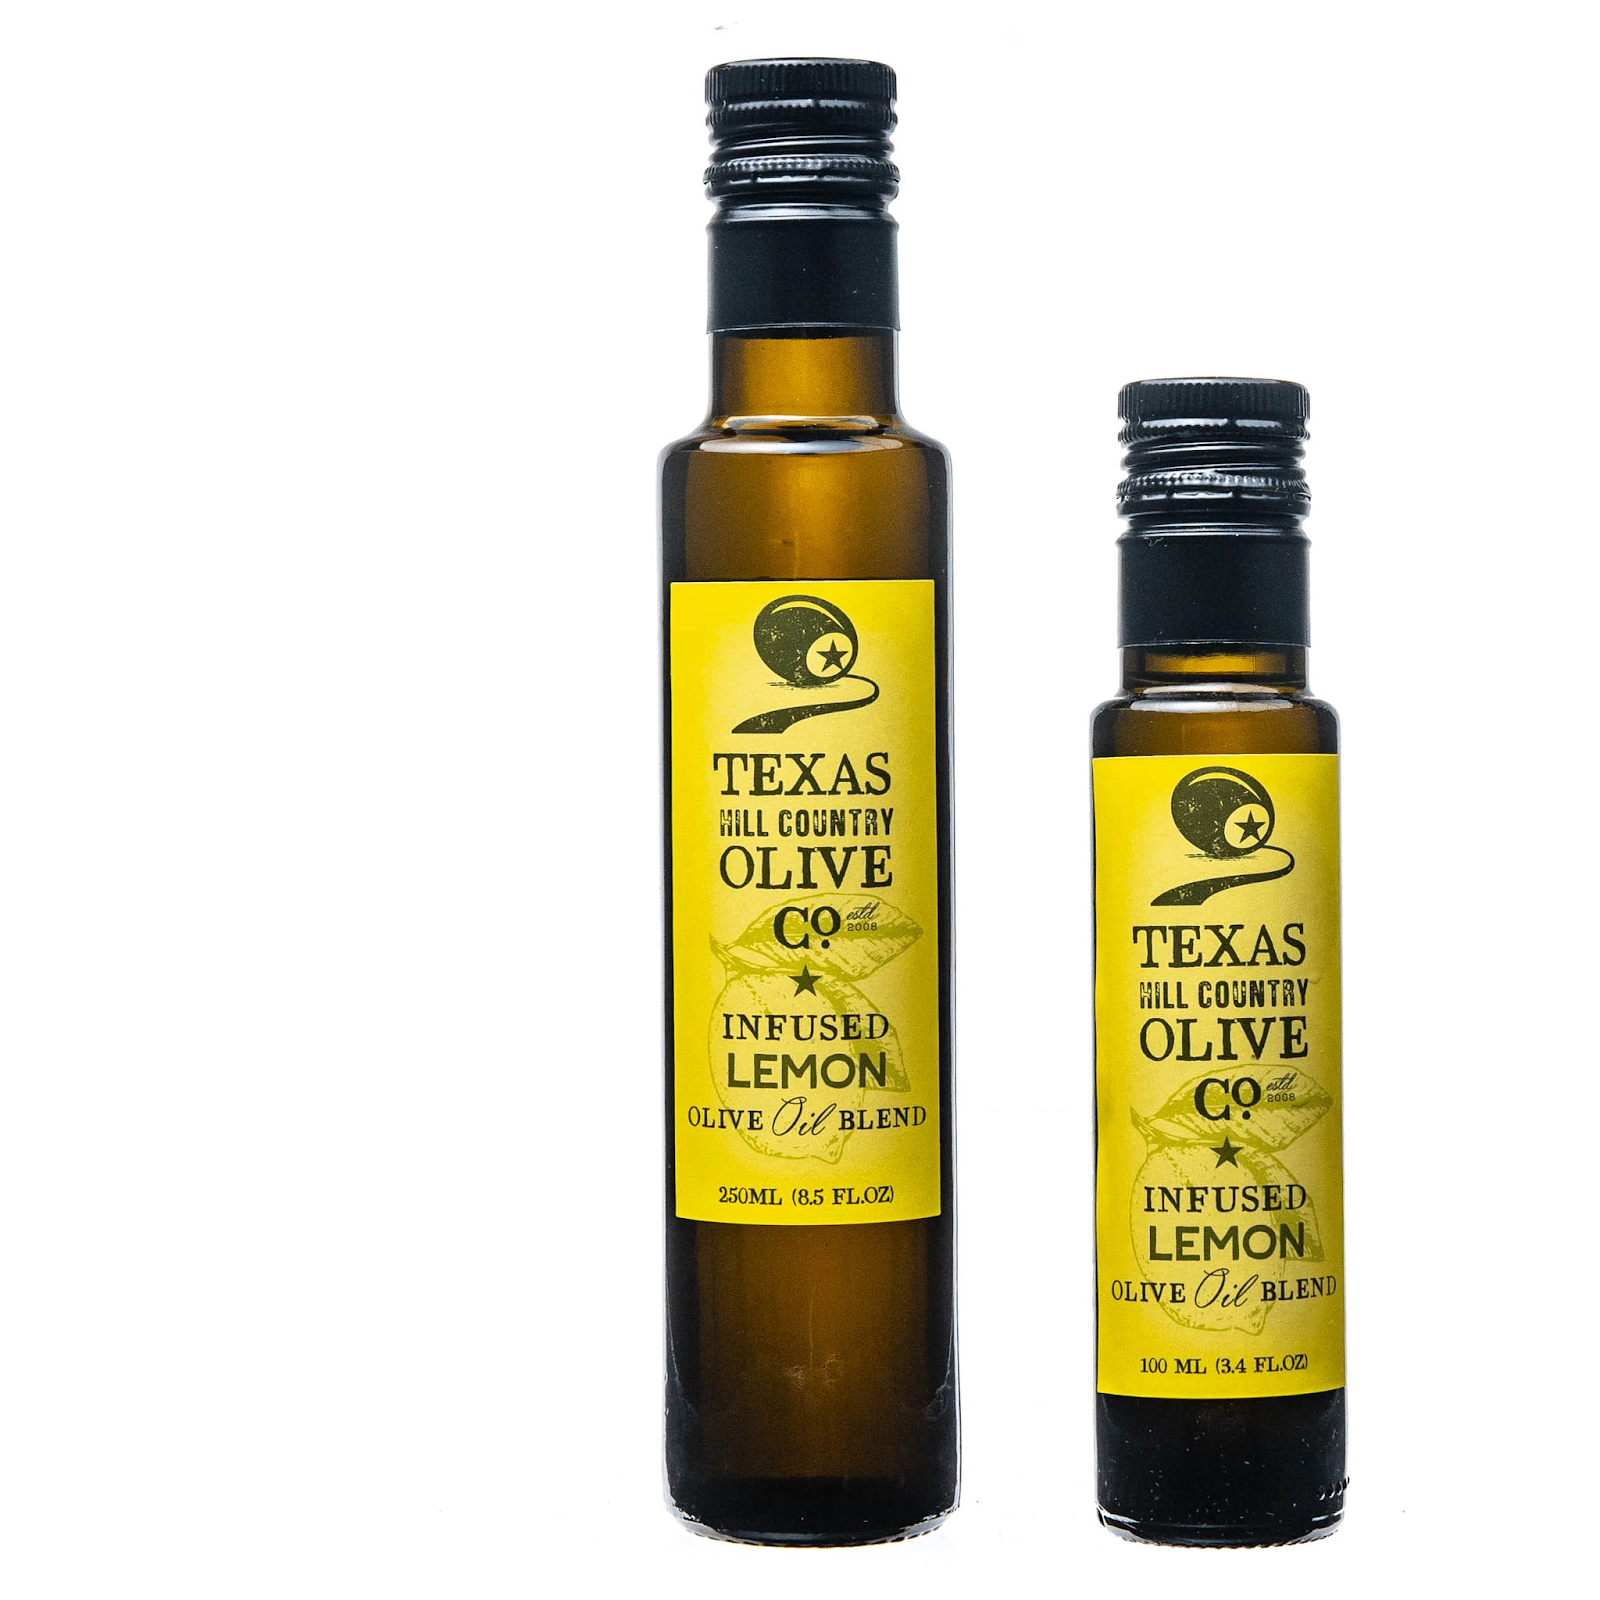 Lemon Infused Texas Olive Oil